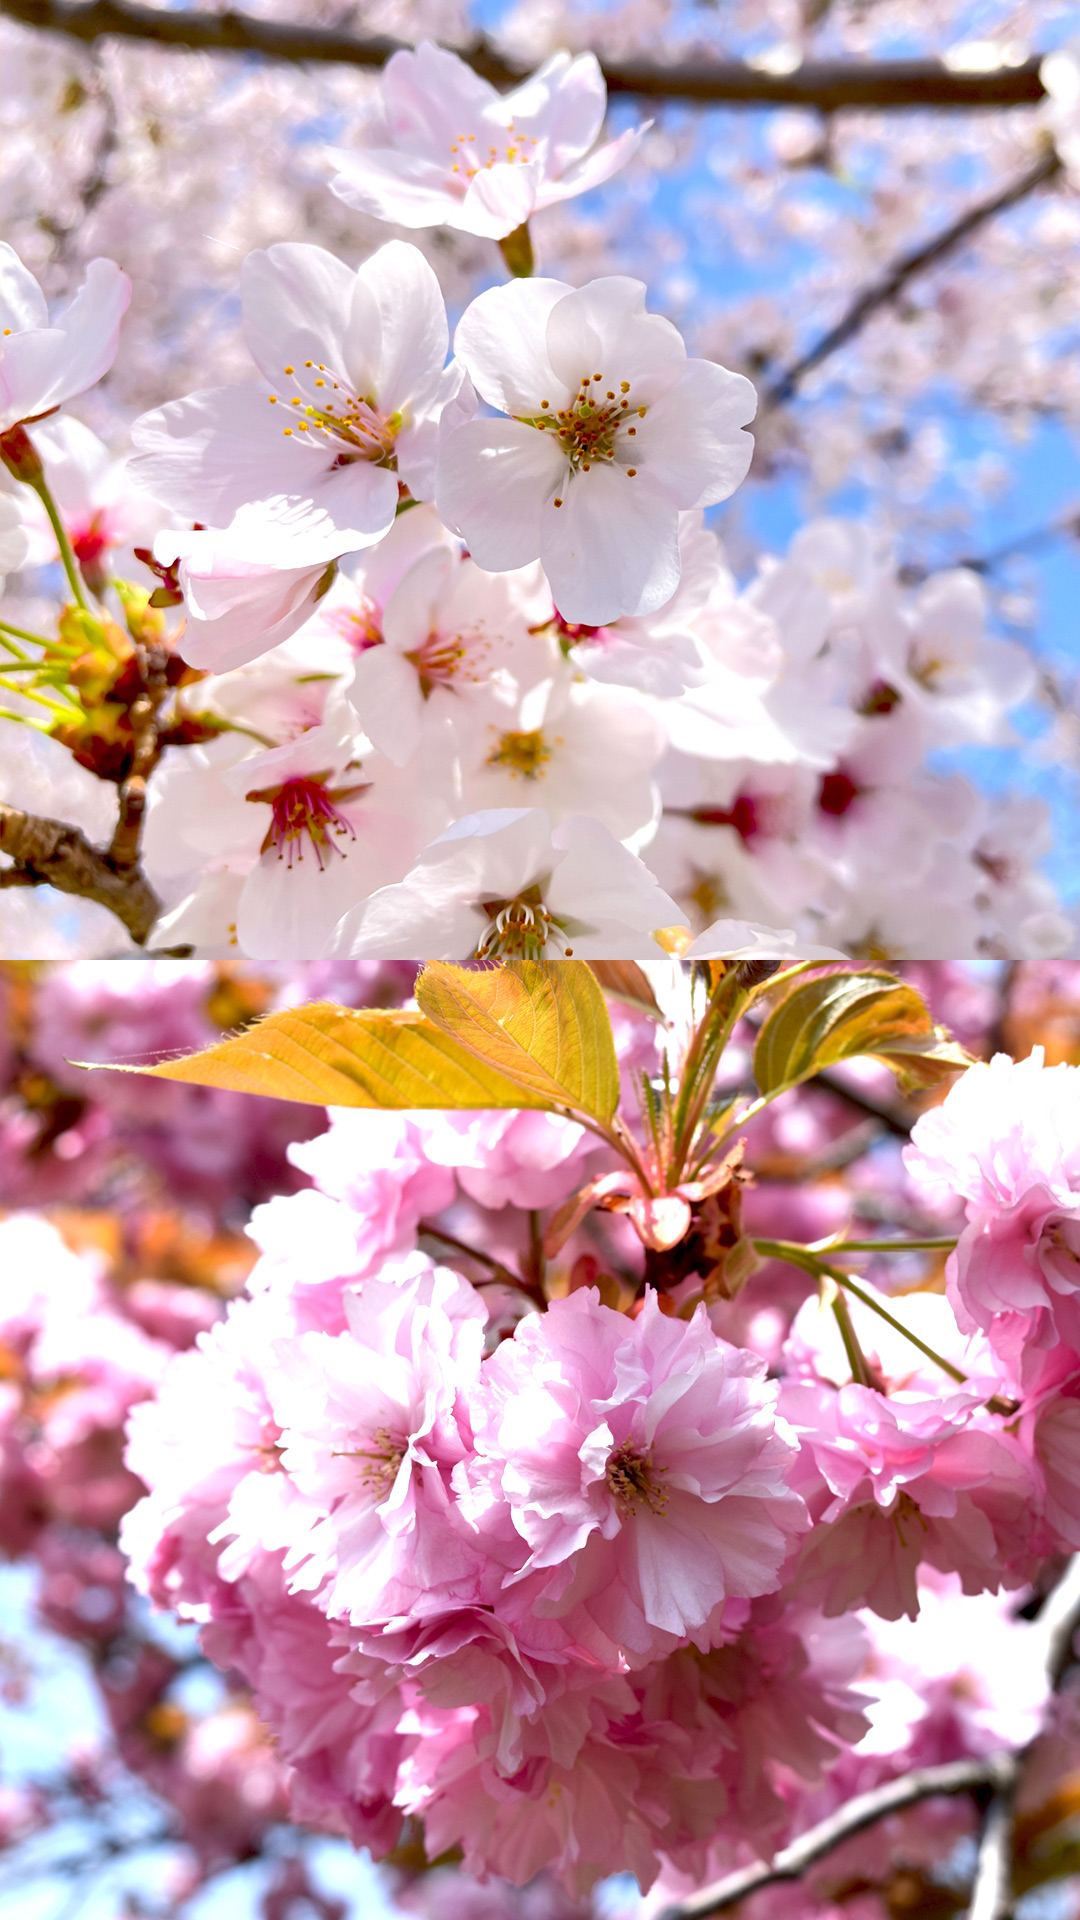 Comparing Someiyoshino and Yaezakura cherry trees